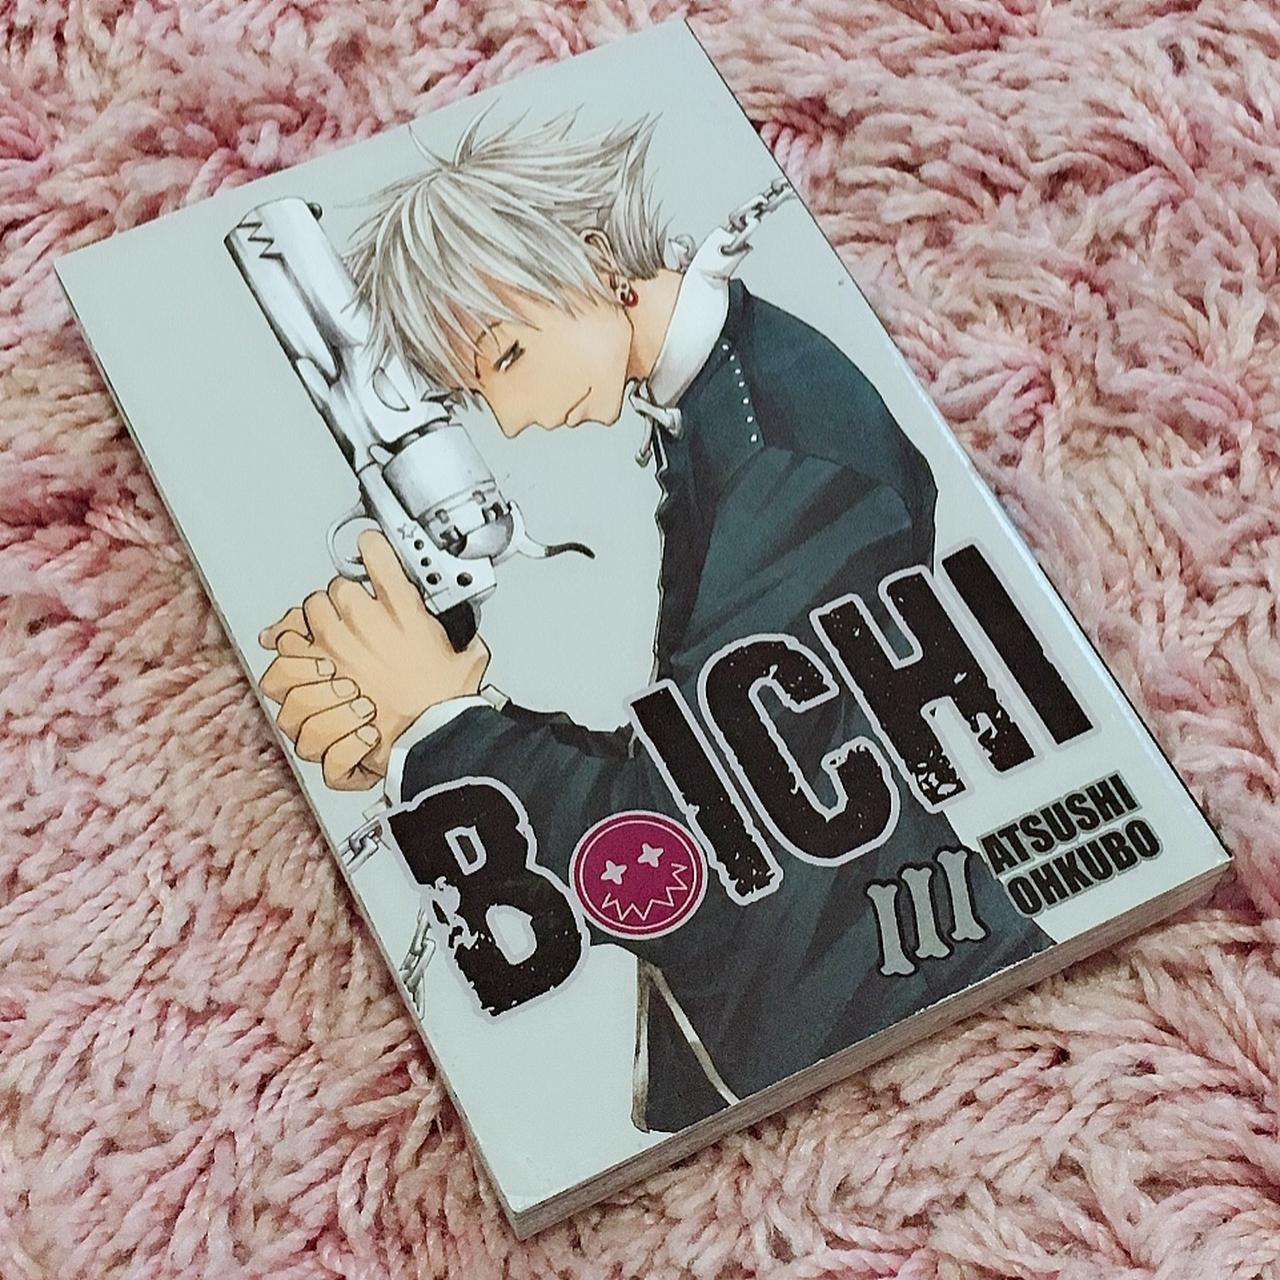 B.ICHI manga volume 3 Message me about bundles! - Depop